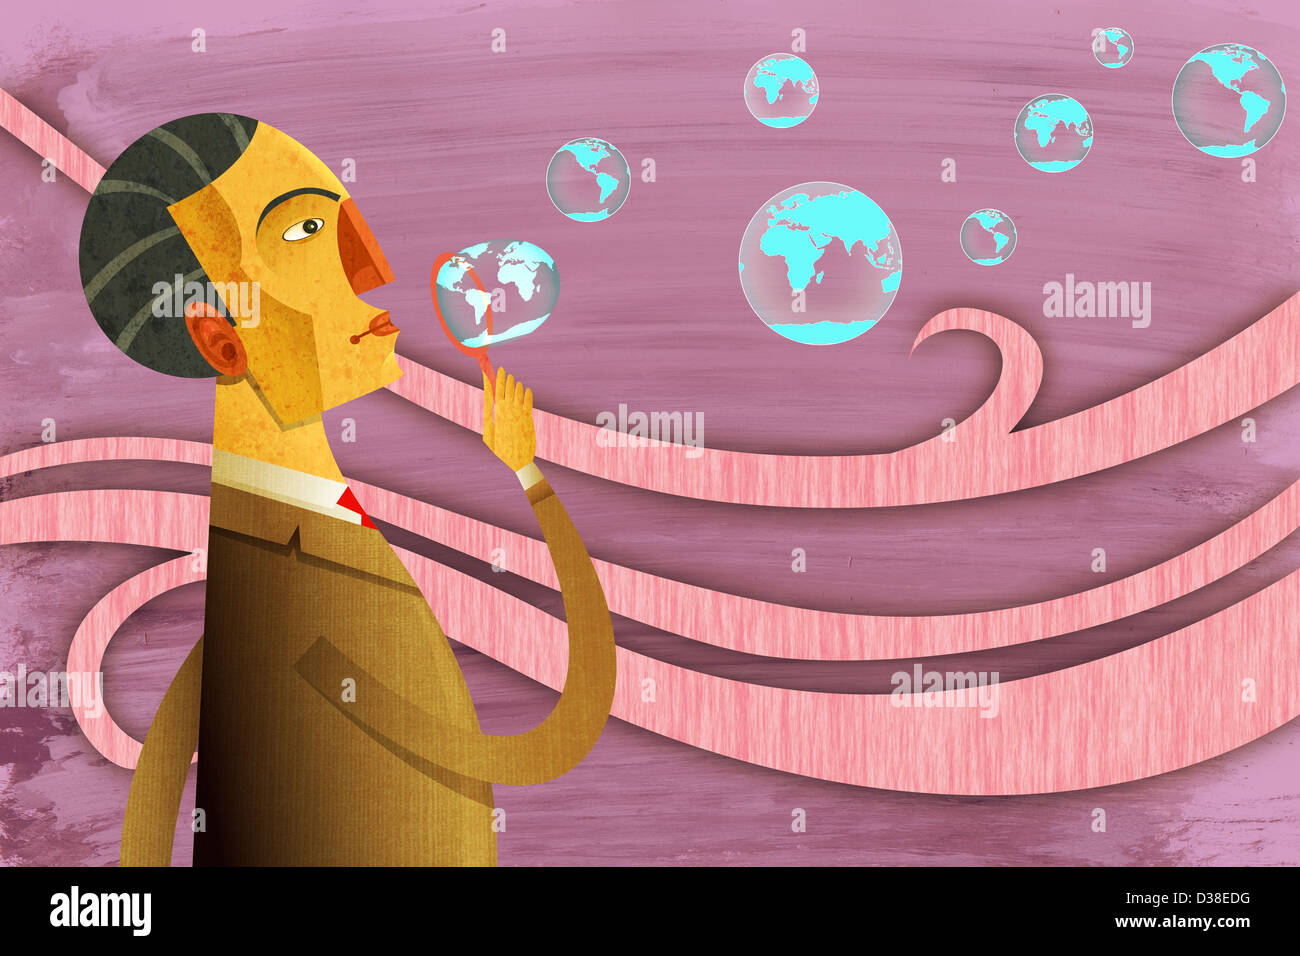 Image d'illustration de businessman blowing bubbles représentant objectif mondial Banque D'Images